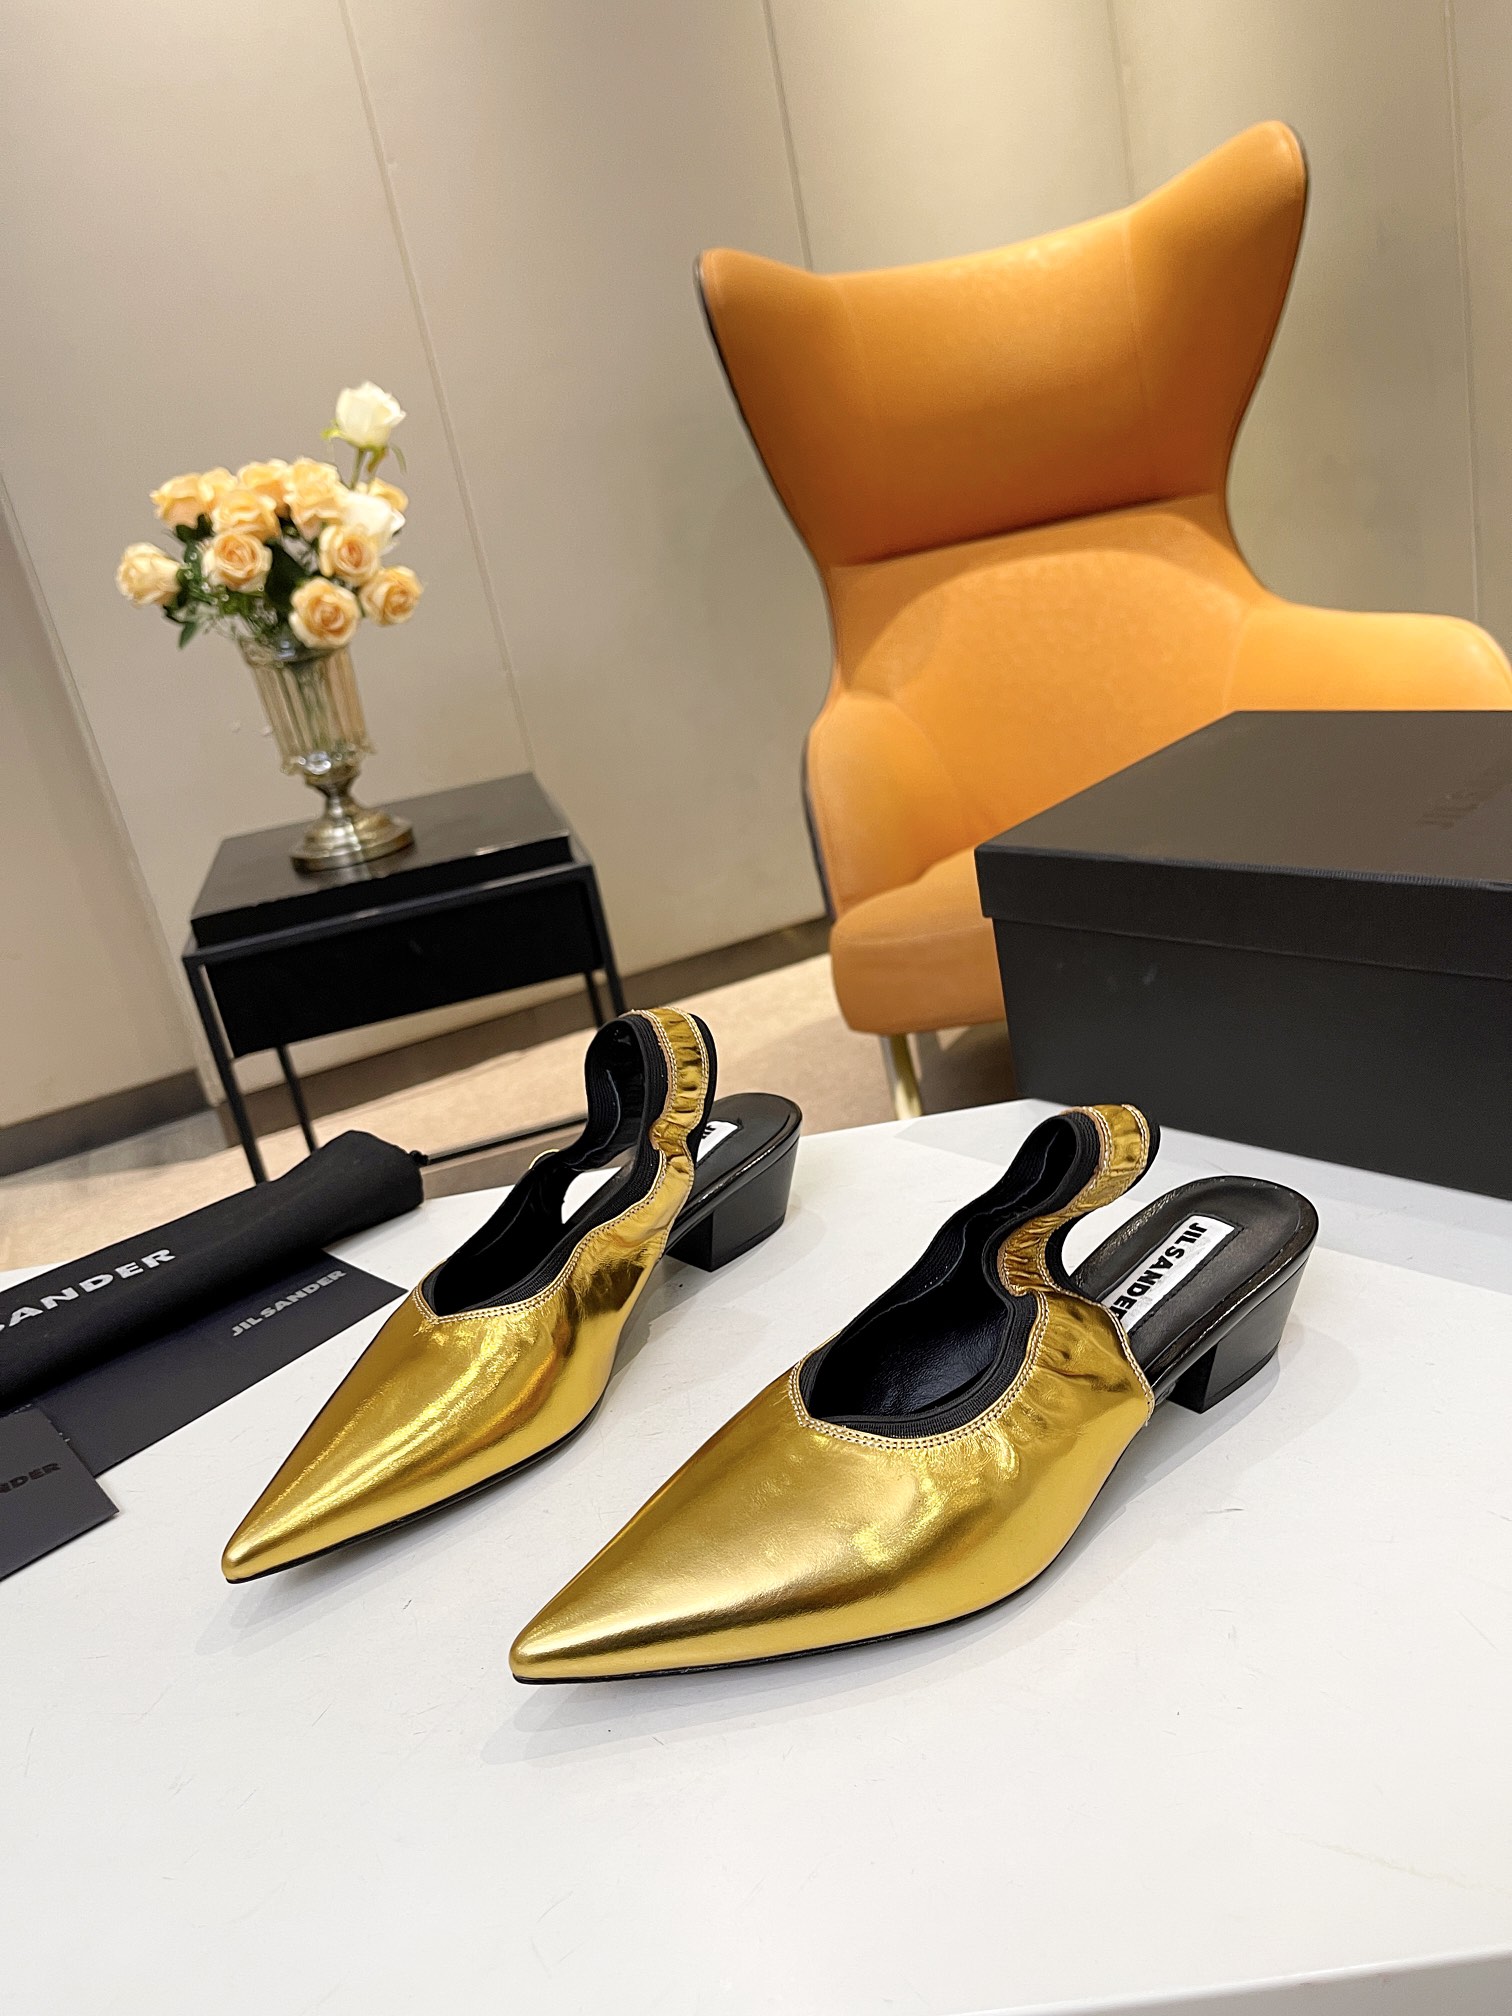 Jil Sander Shoes Sandals Cowhide Genuine Leather Sheepskin Spring/Summer Collection